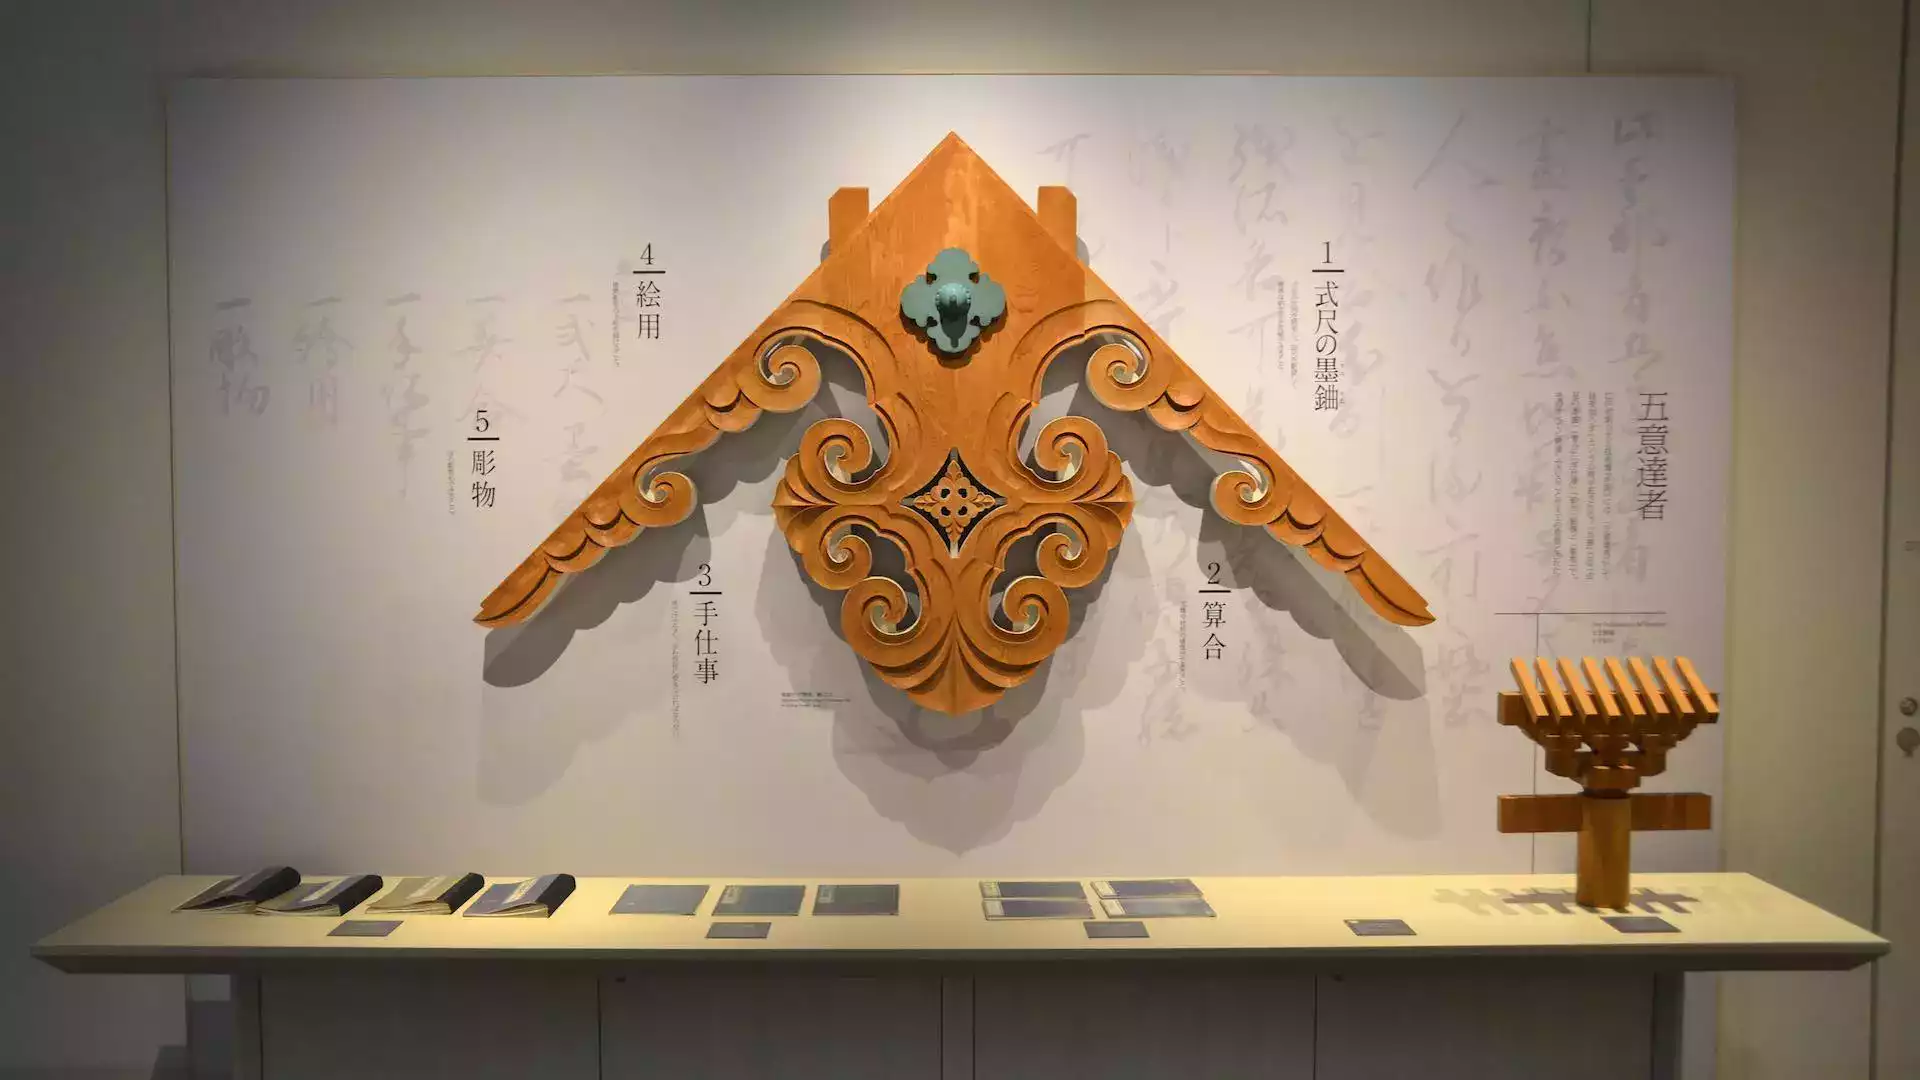 Takenaka Marangozluk Aletleri Müzesi